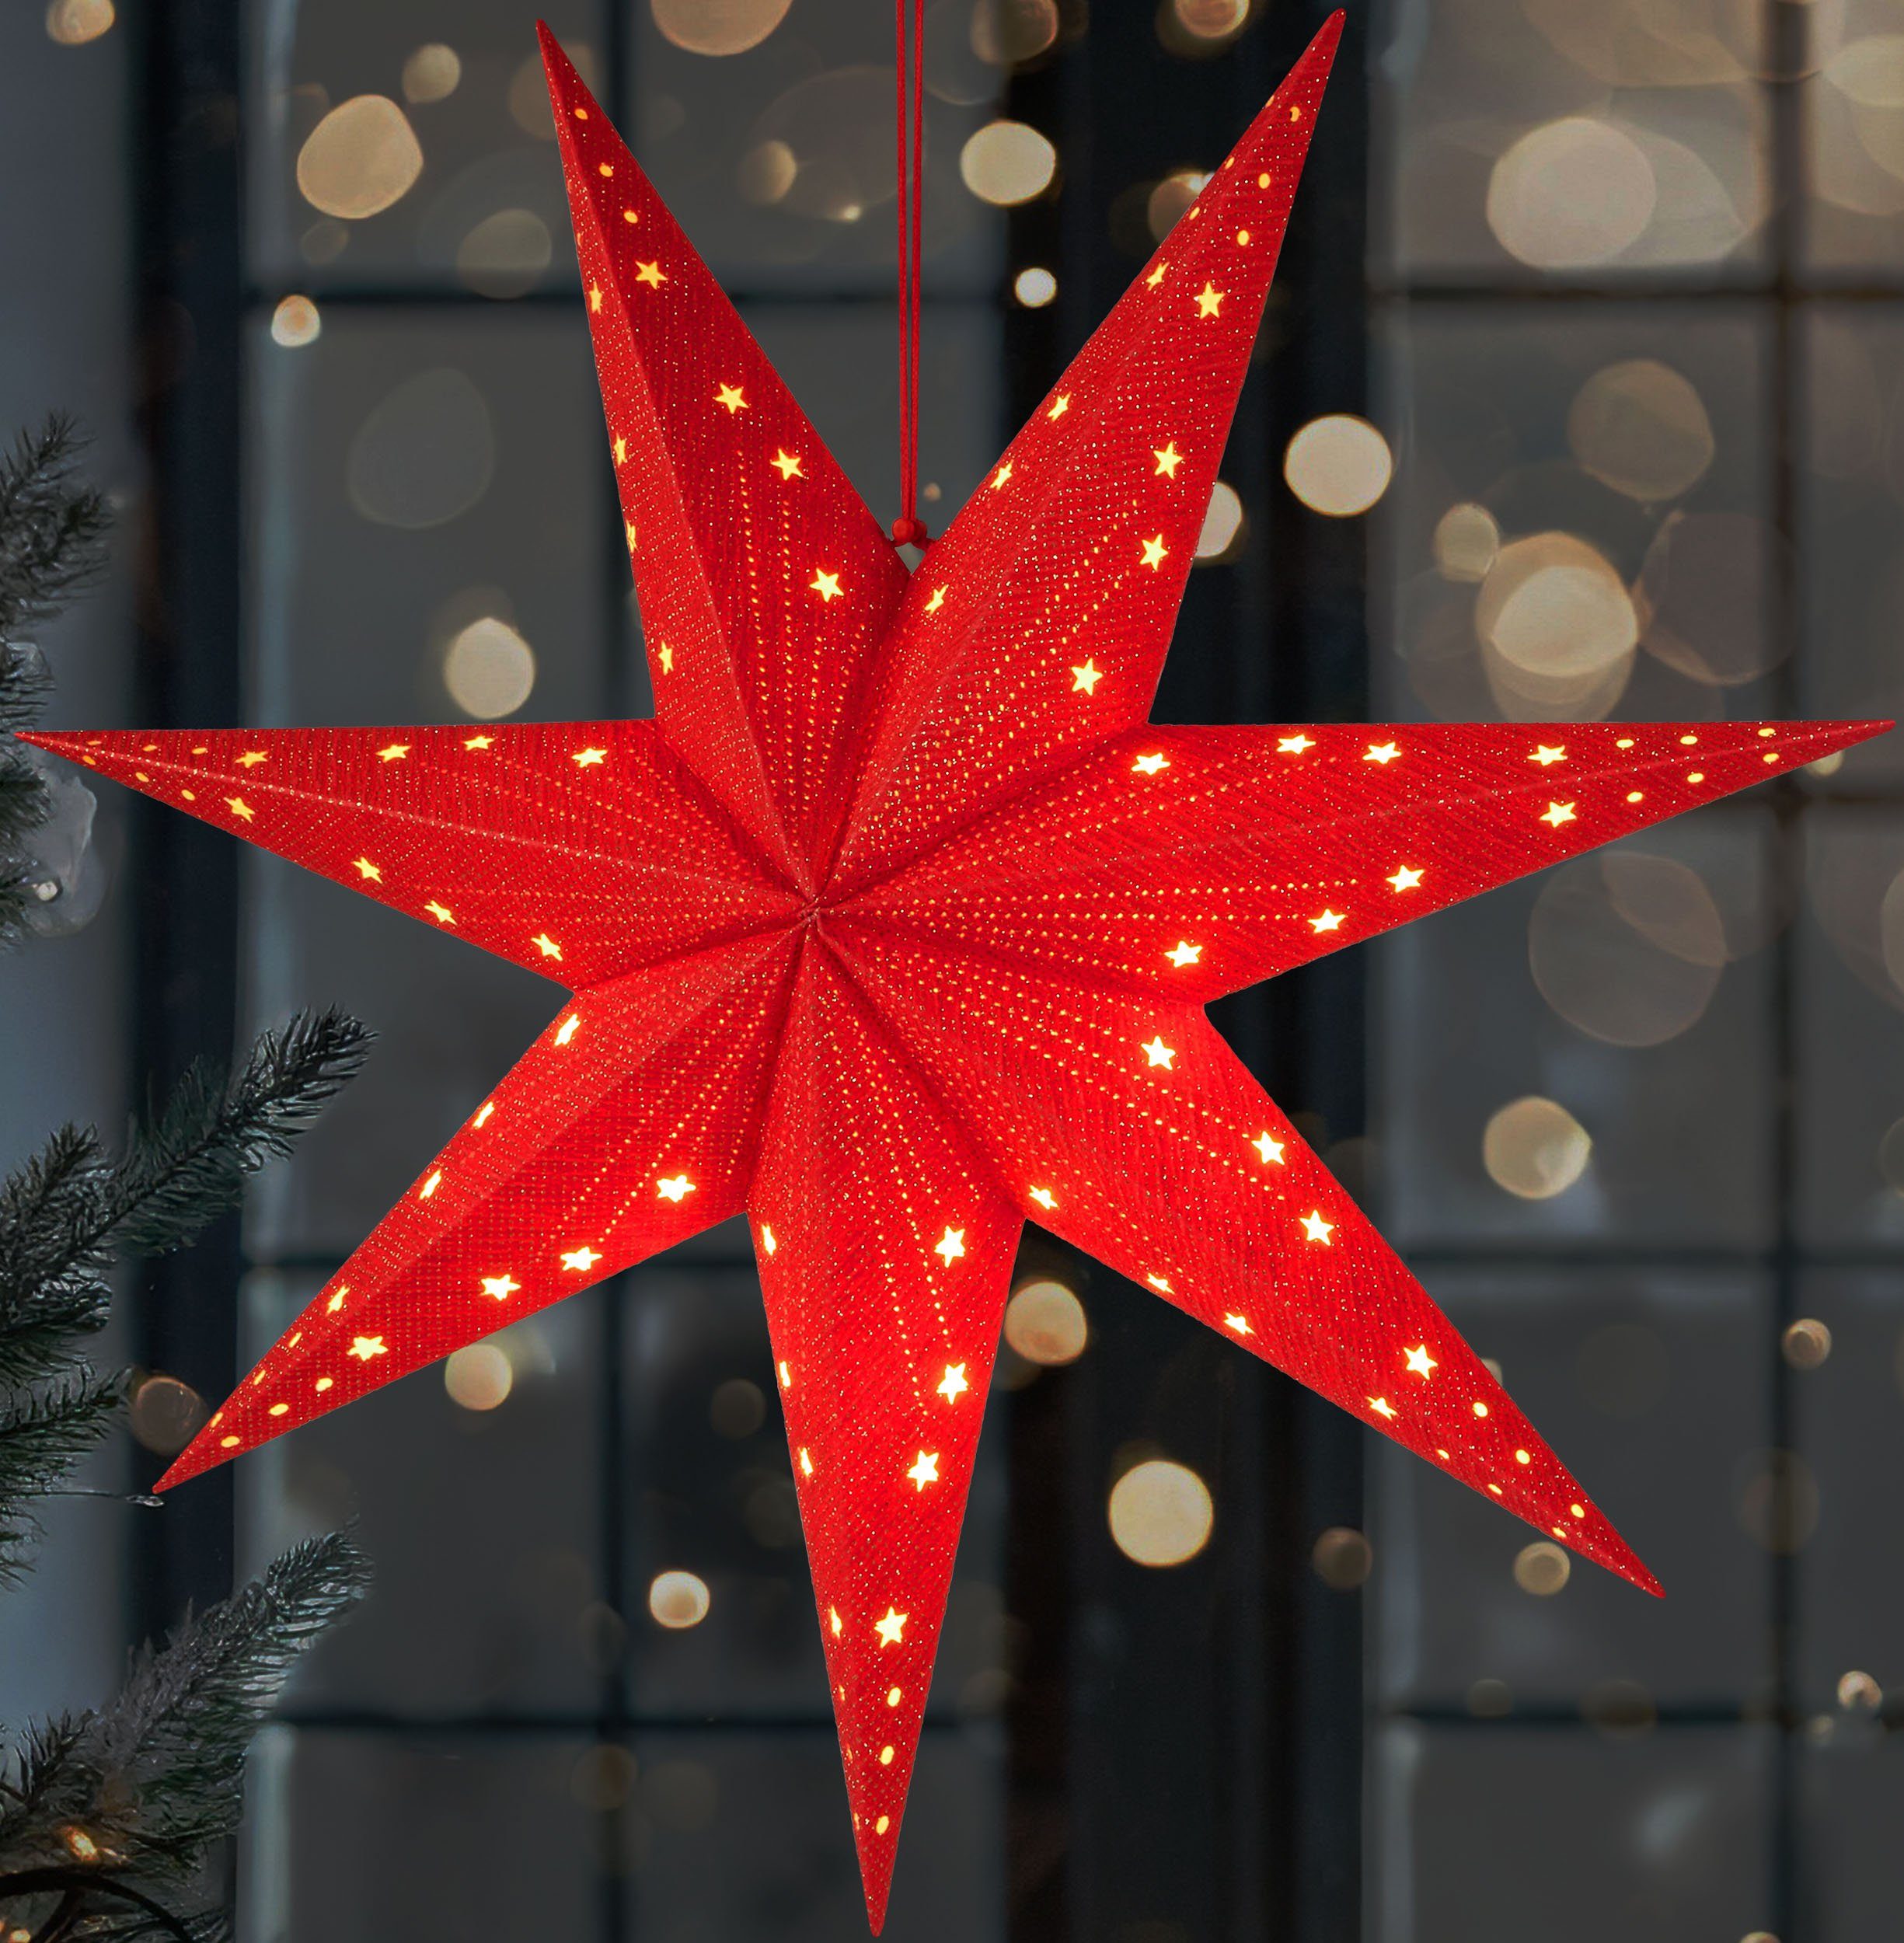 BRUBAKER LED Stern Weihnachtsstern zum Aufhängen - 60 cm Papierstern mit 7 Spitzen, Batteriebetrieben, Hängend und Beleuchtet, LED fest integriert, Warmweiß, 3D Adventsstern - Fenster Deko Leuchtstern Rot